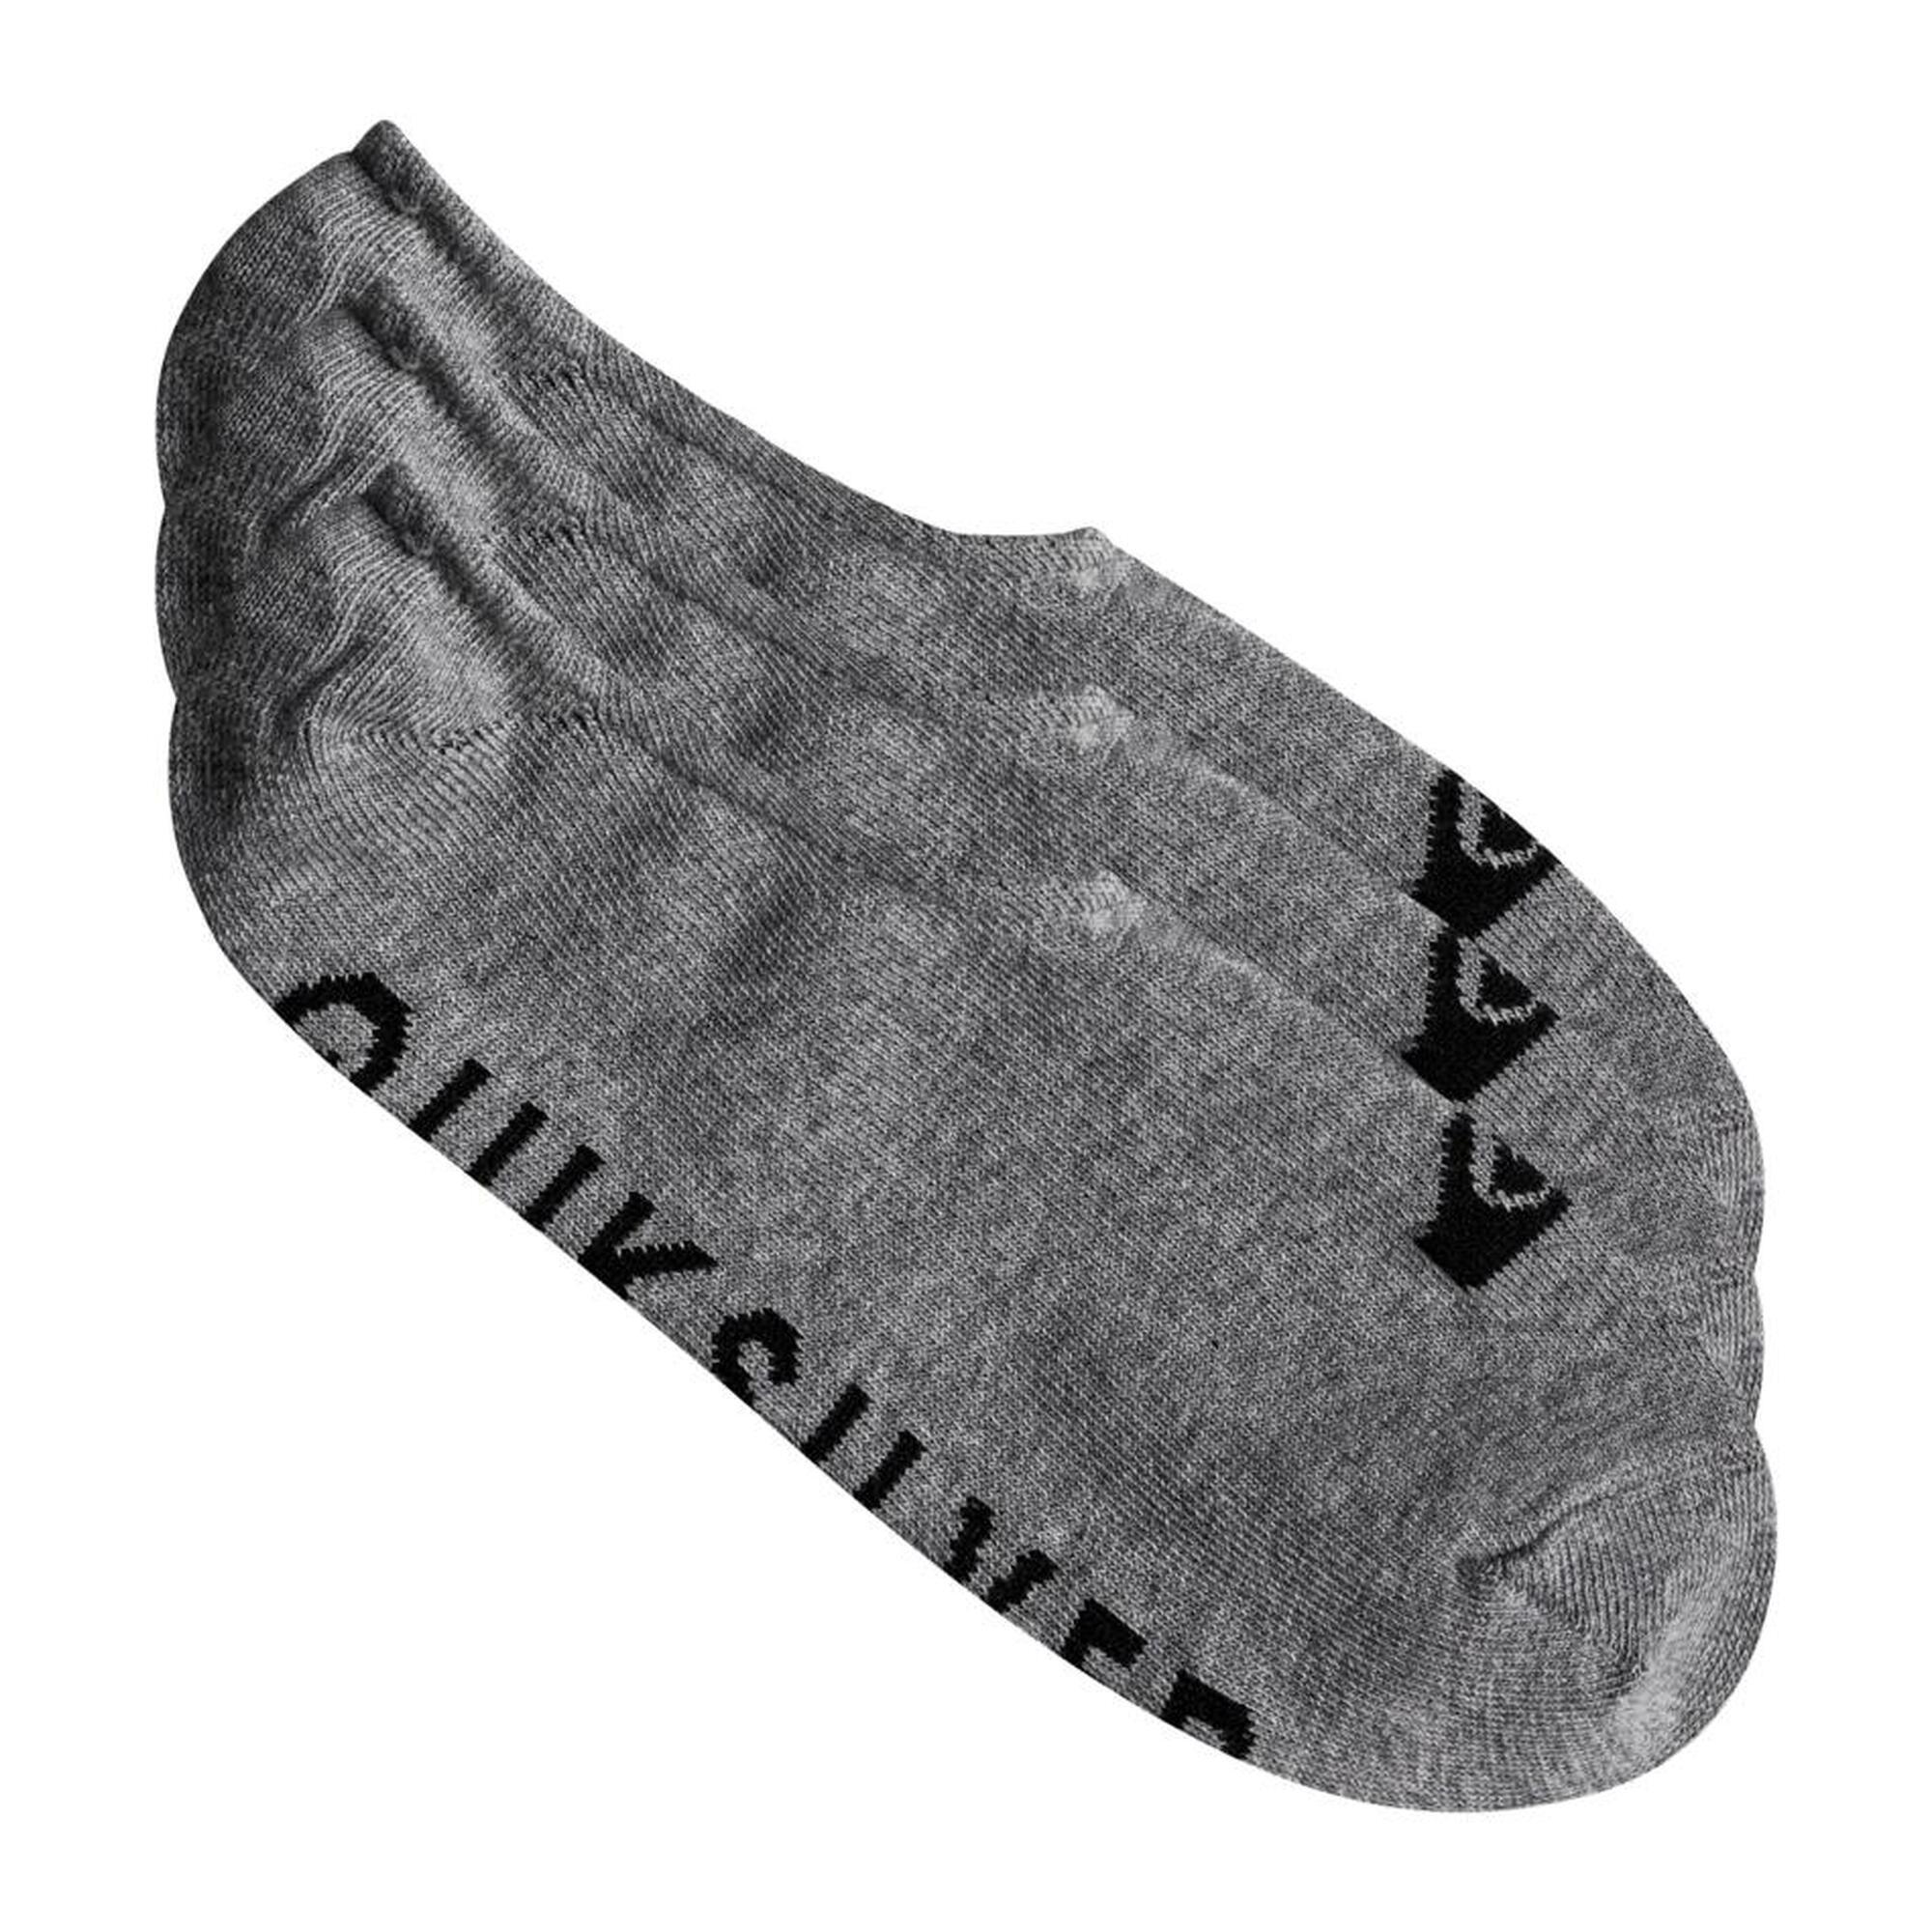 Pack liner socks men's surf